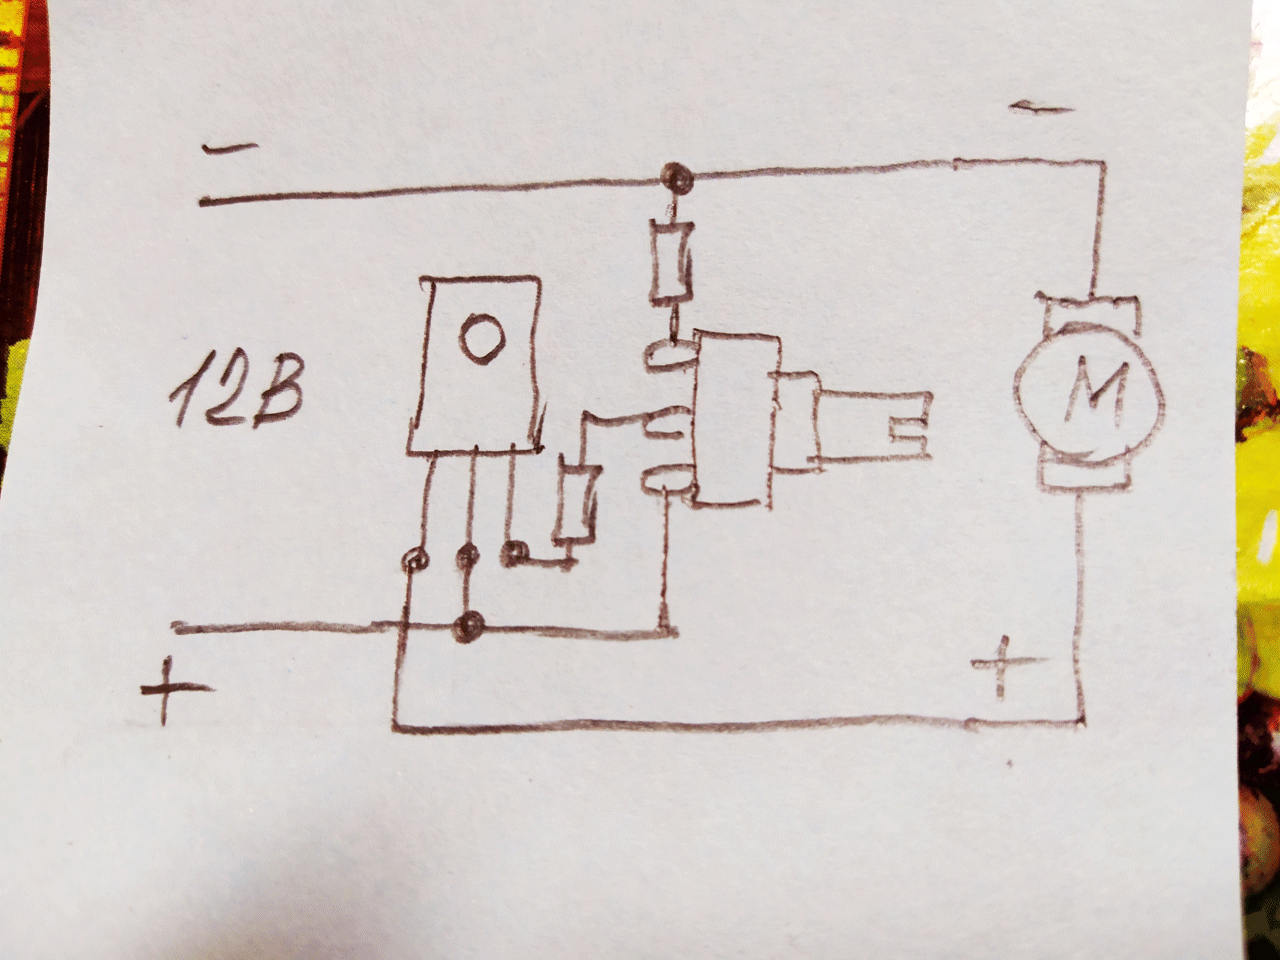 Самодельный регулятор оборотов вентиляторов компа - реобас для кулеров пк схема